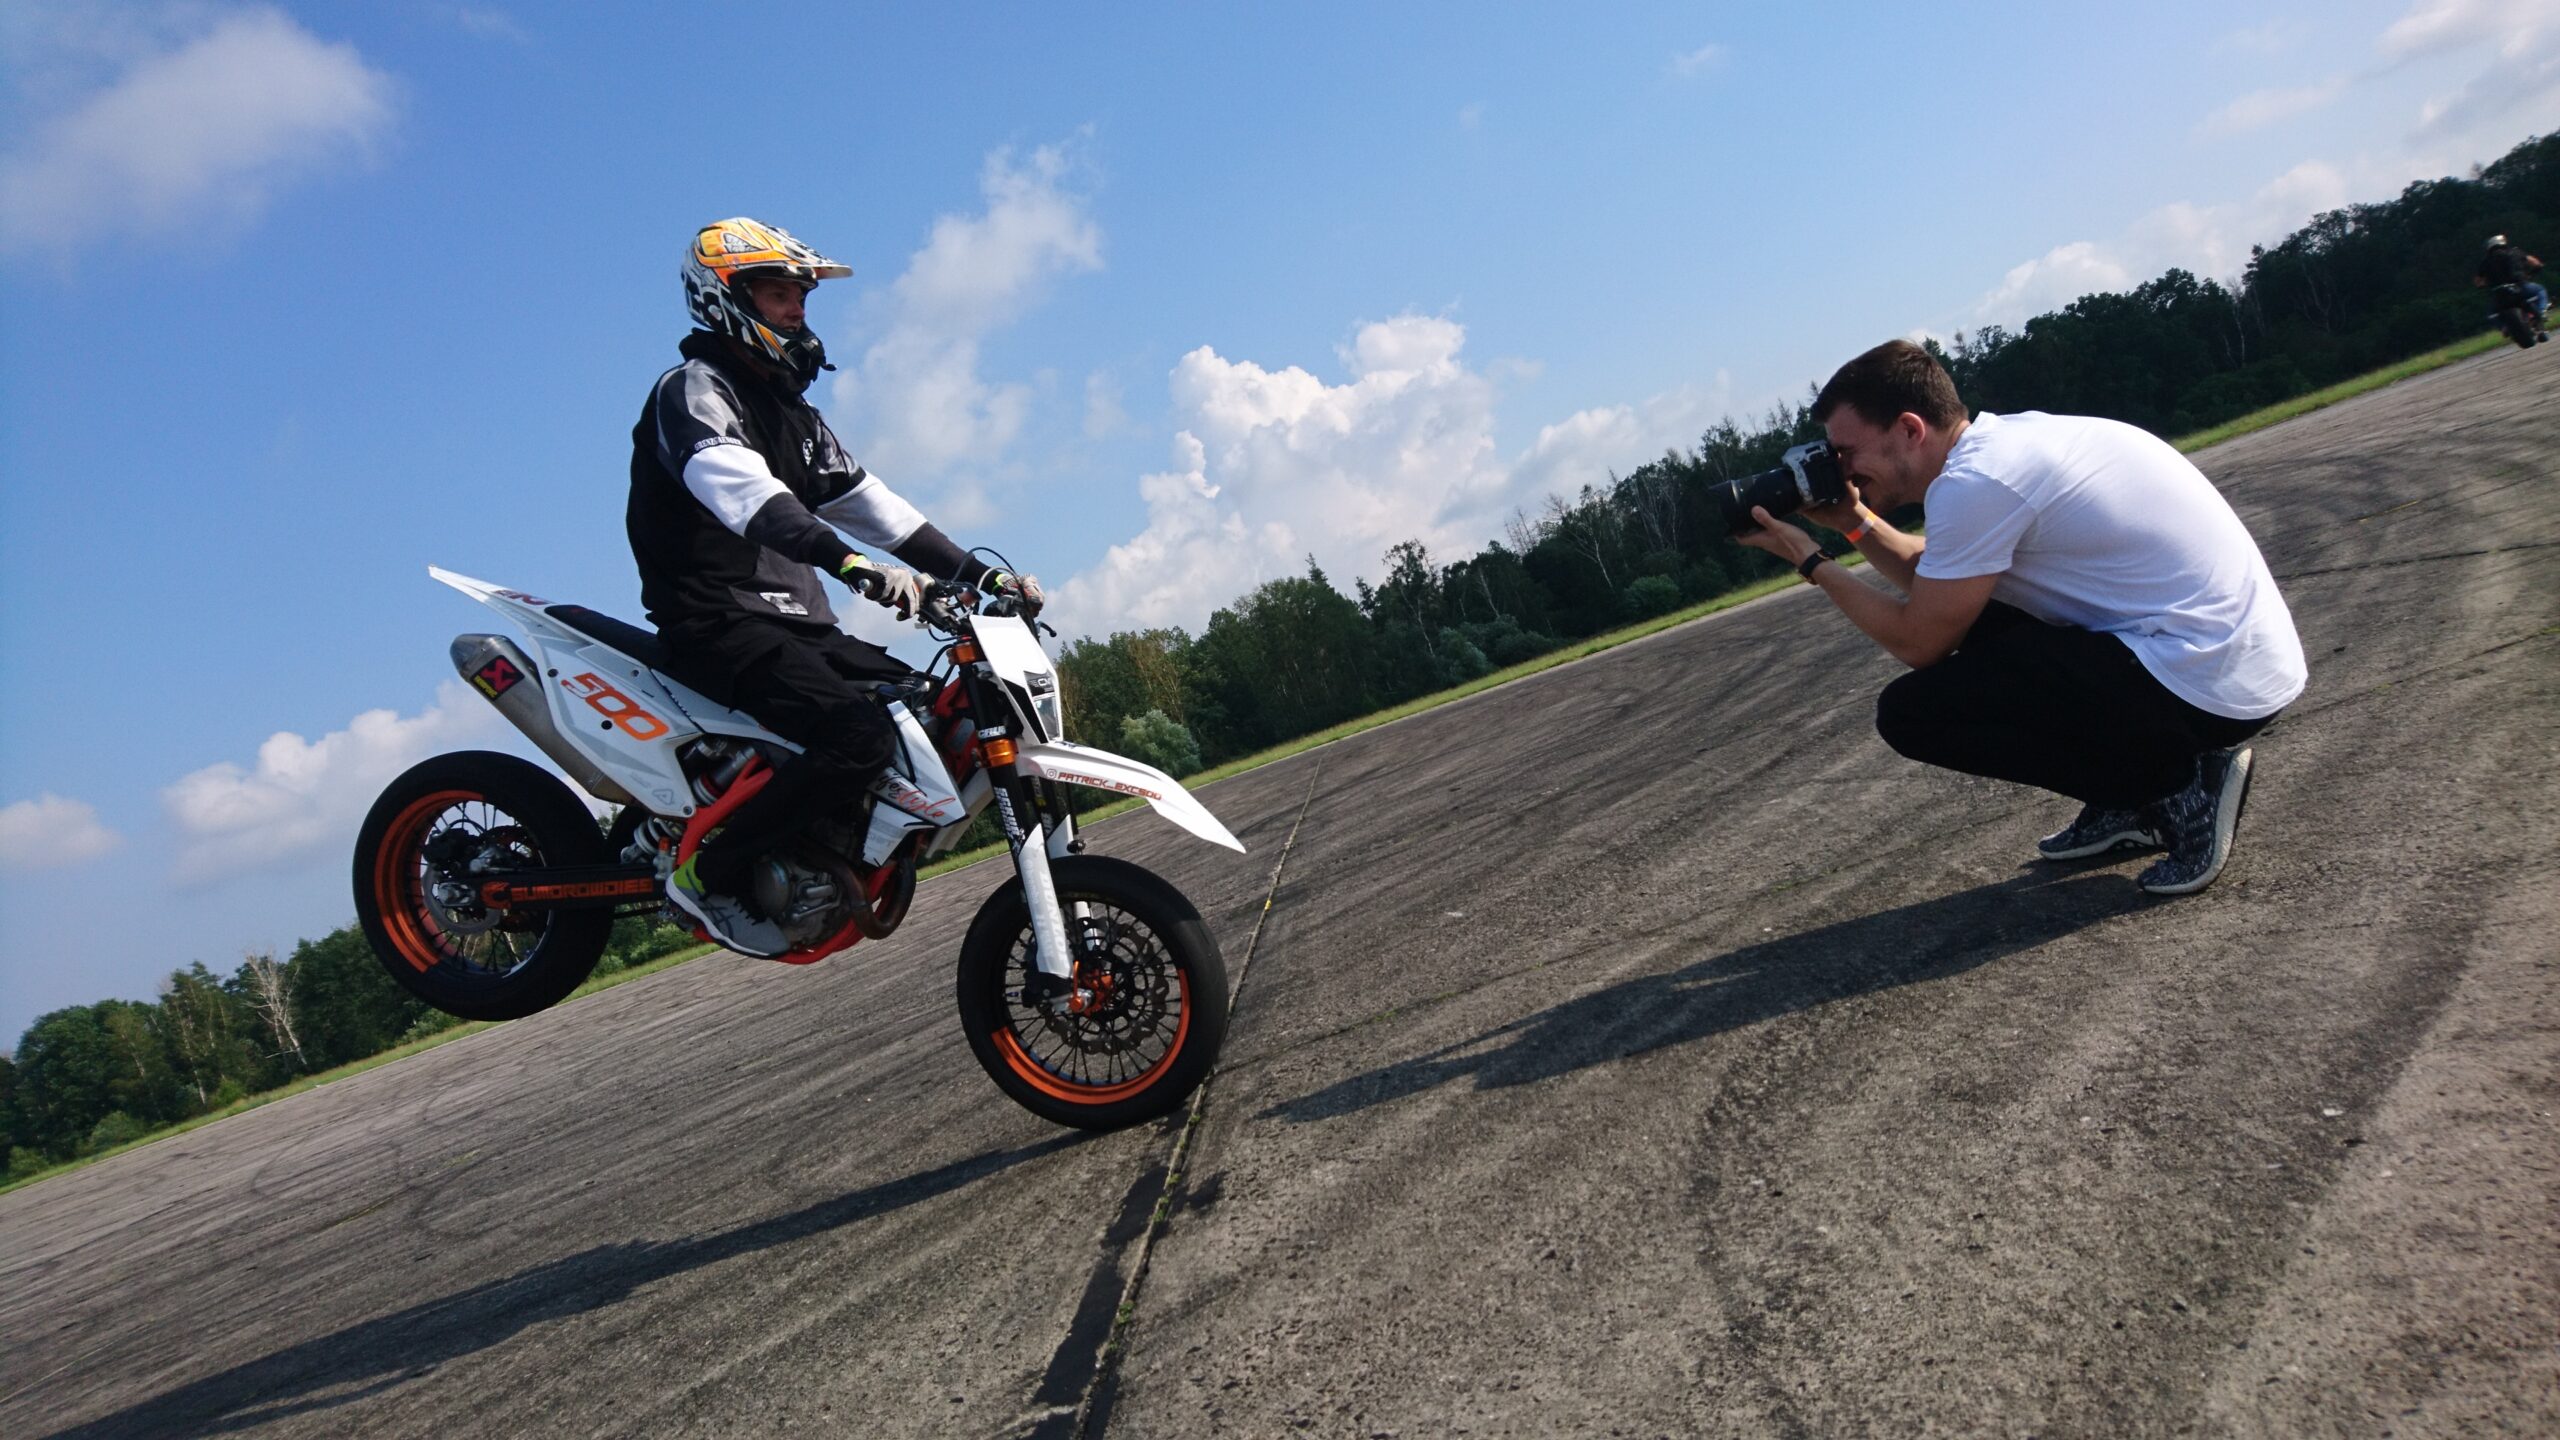 Bild zeigt Person beim Motorcross und Fotograf im Rahmen eines Fotoshootings für professionelle Businessfotos.